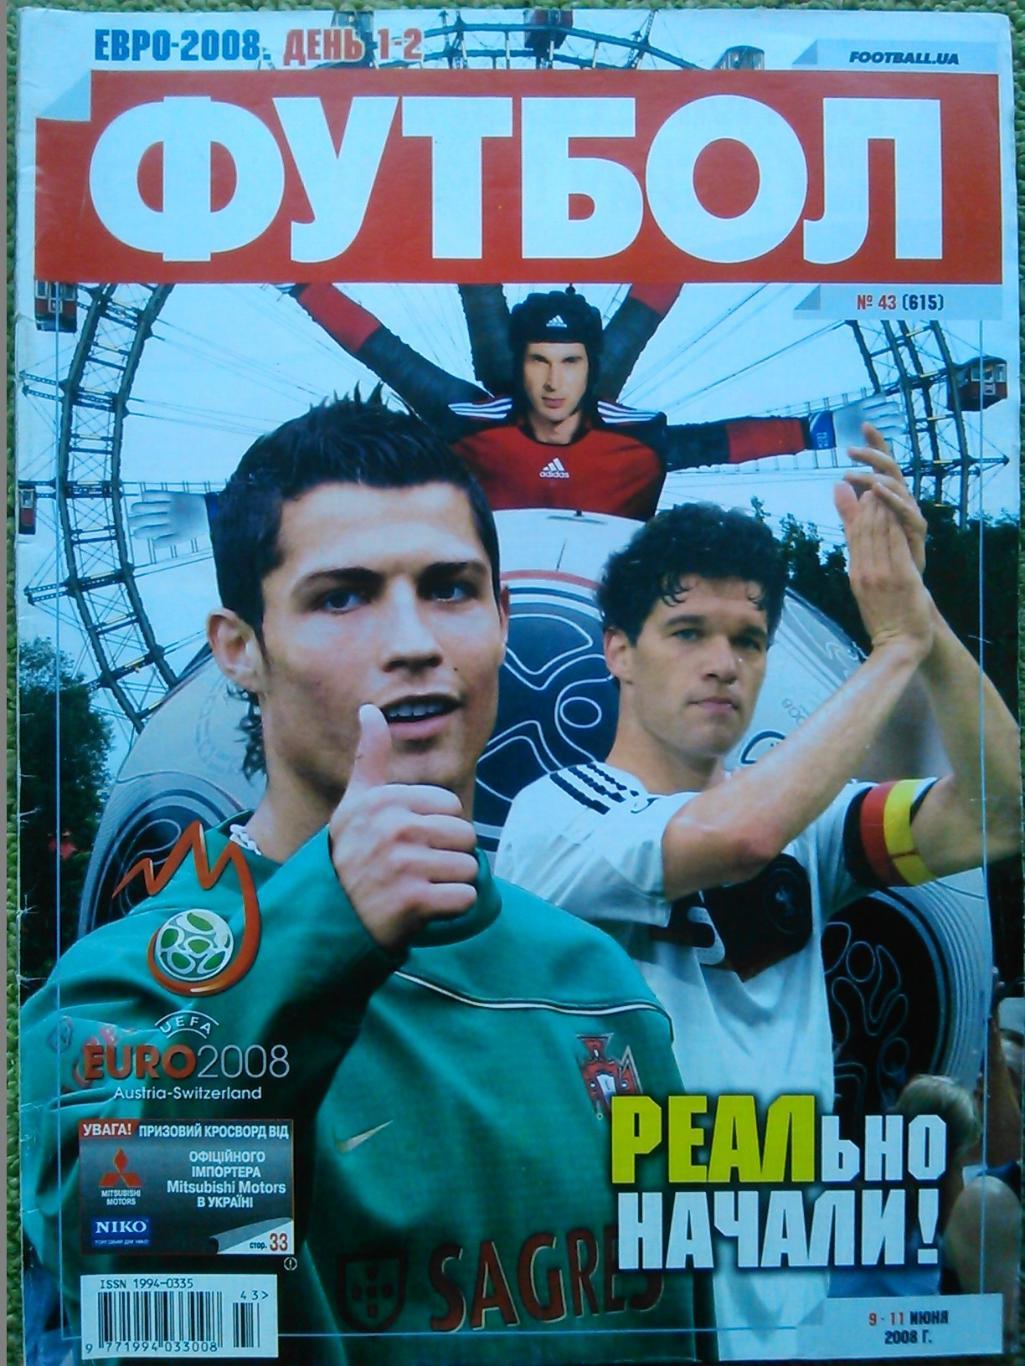 ФУТБОЛ.(Украина.)-2008. №43(615).июнь. Постер-сборная Германии. ЕВРО-2008.День 1